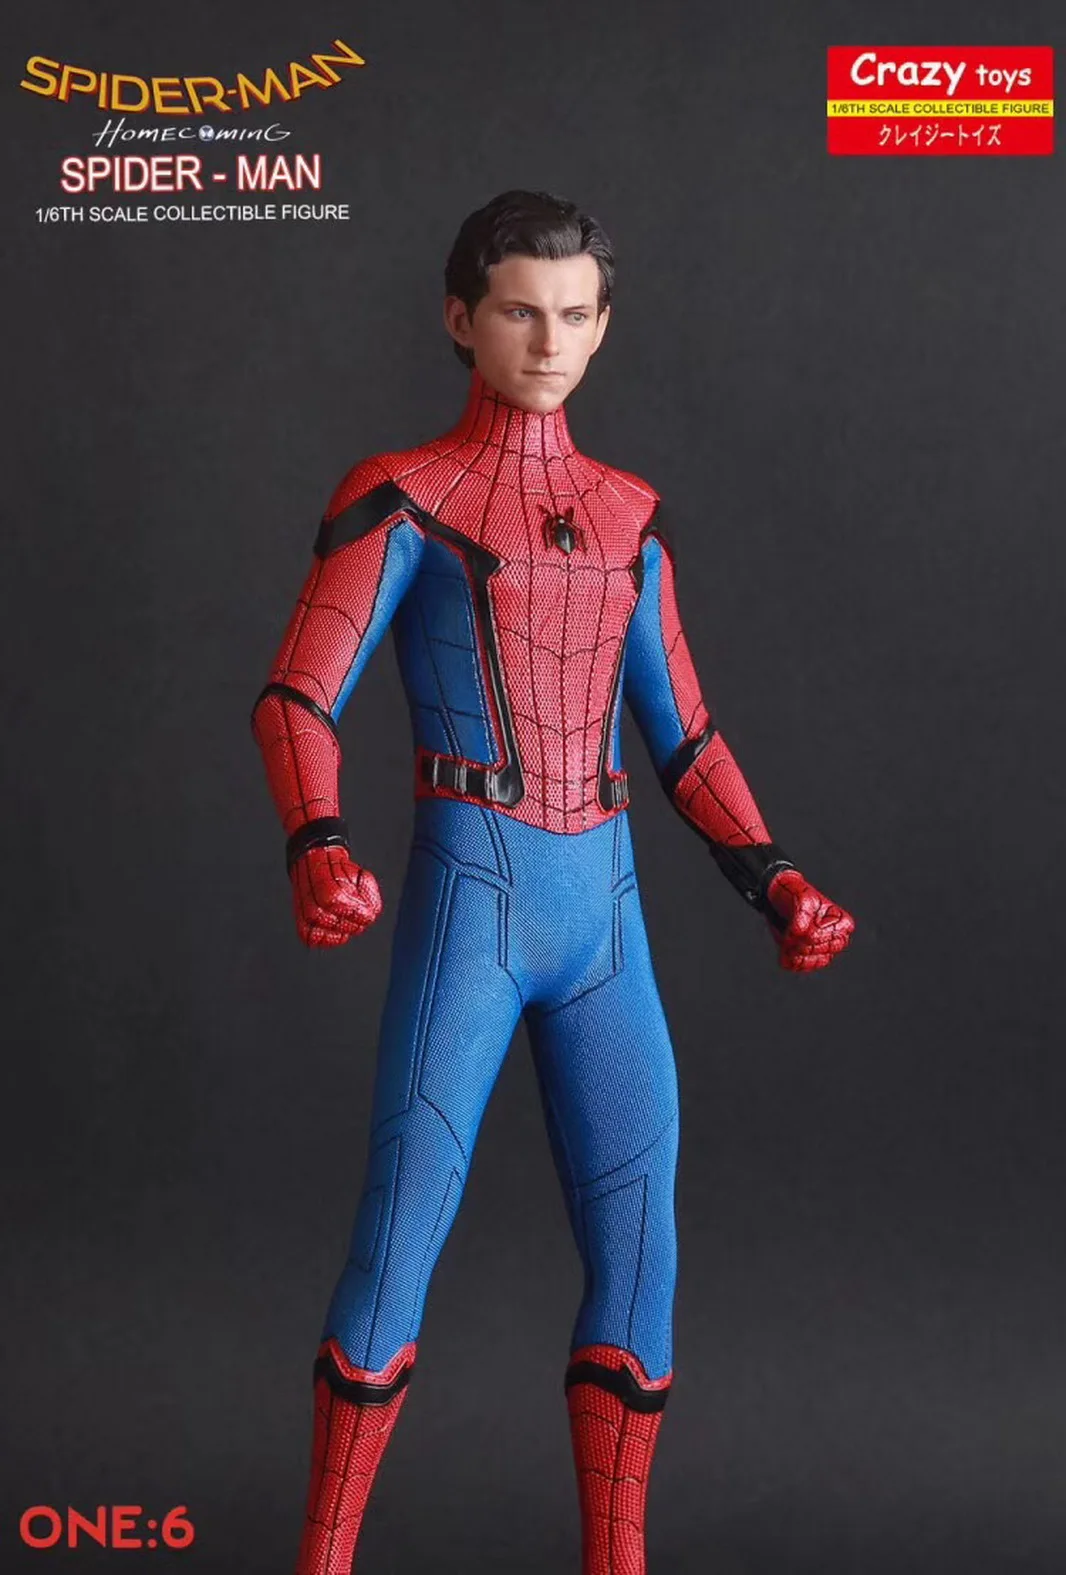 1/6TH Человек-паук 12 ''Сумасшедшие игрушки кукла статуя модель подарок